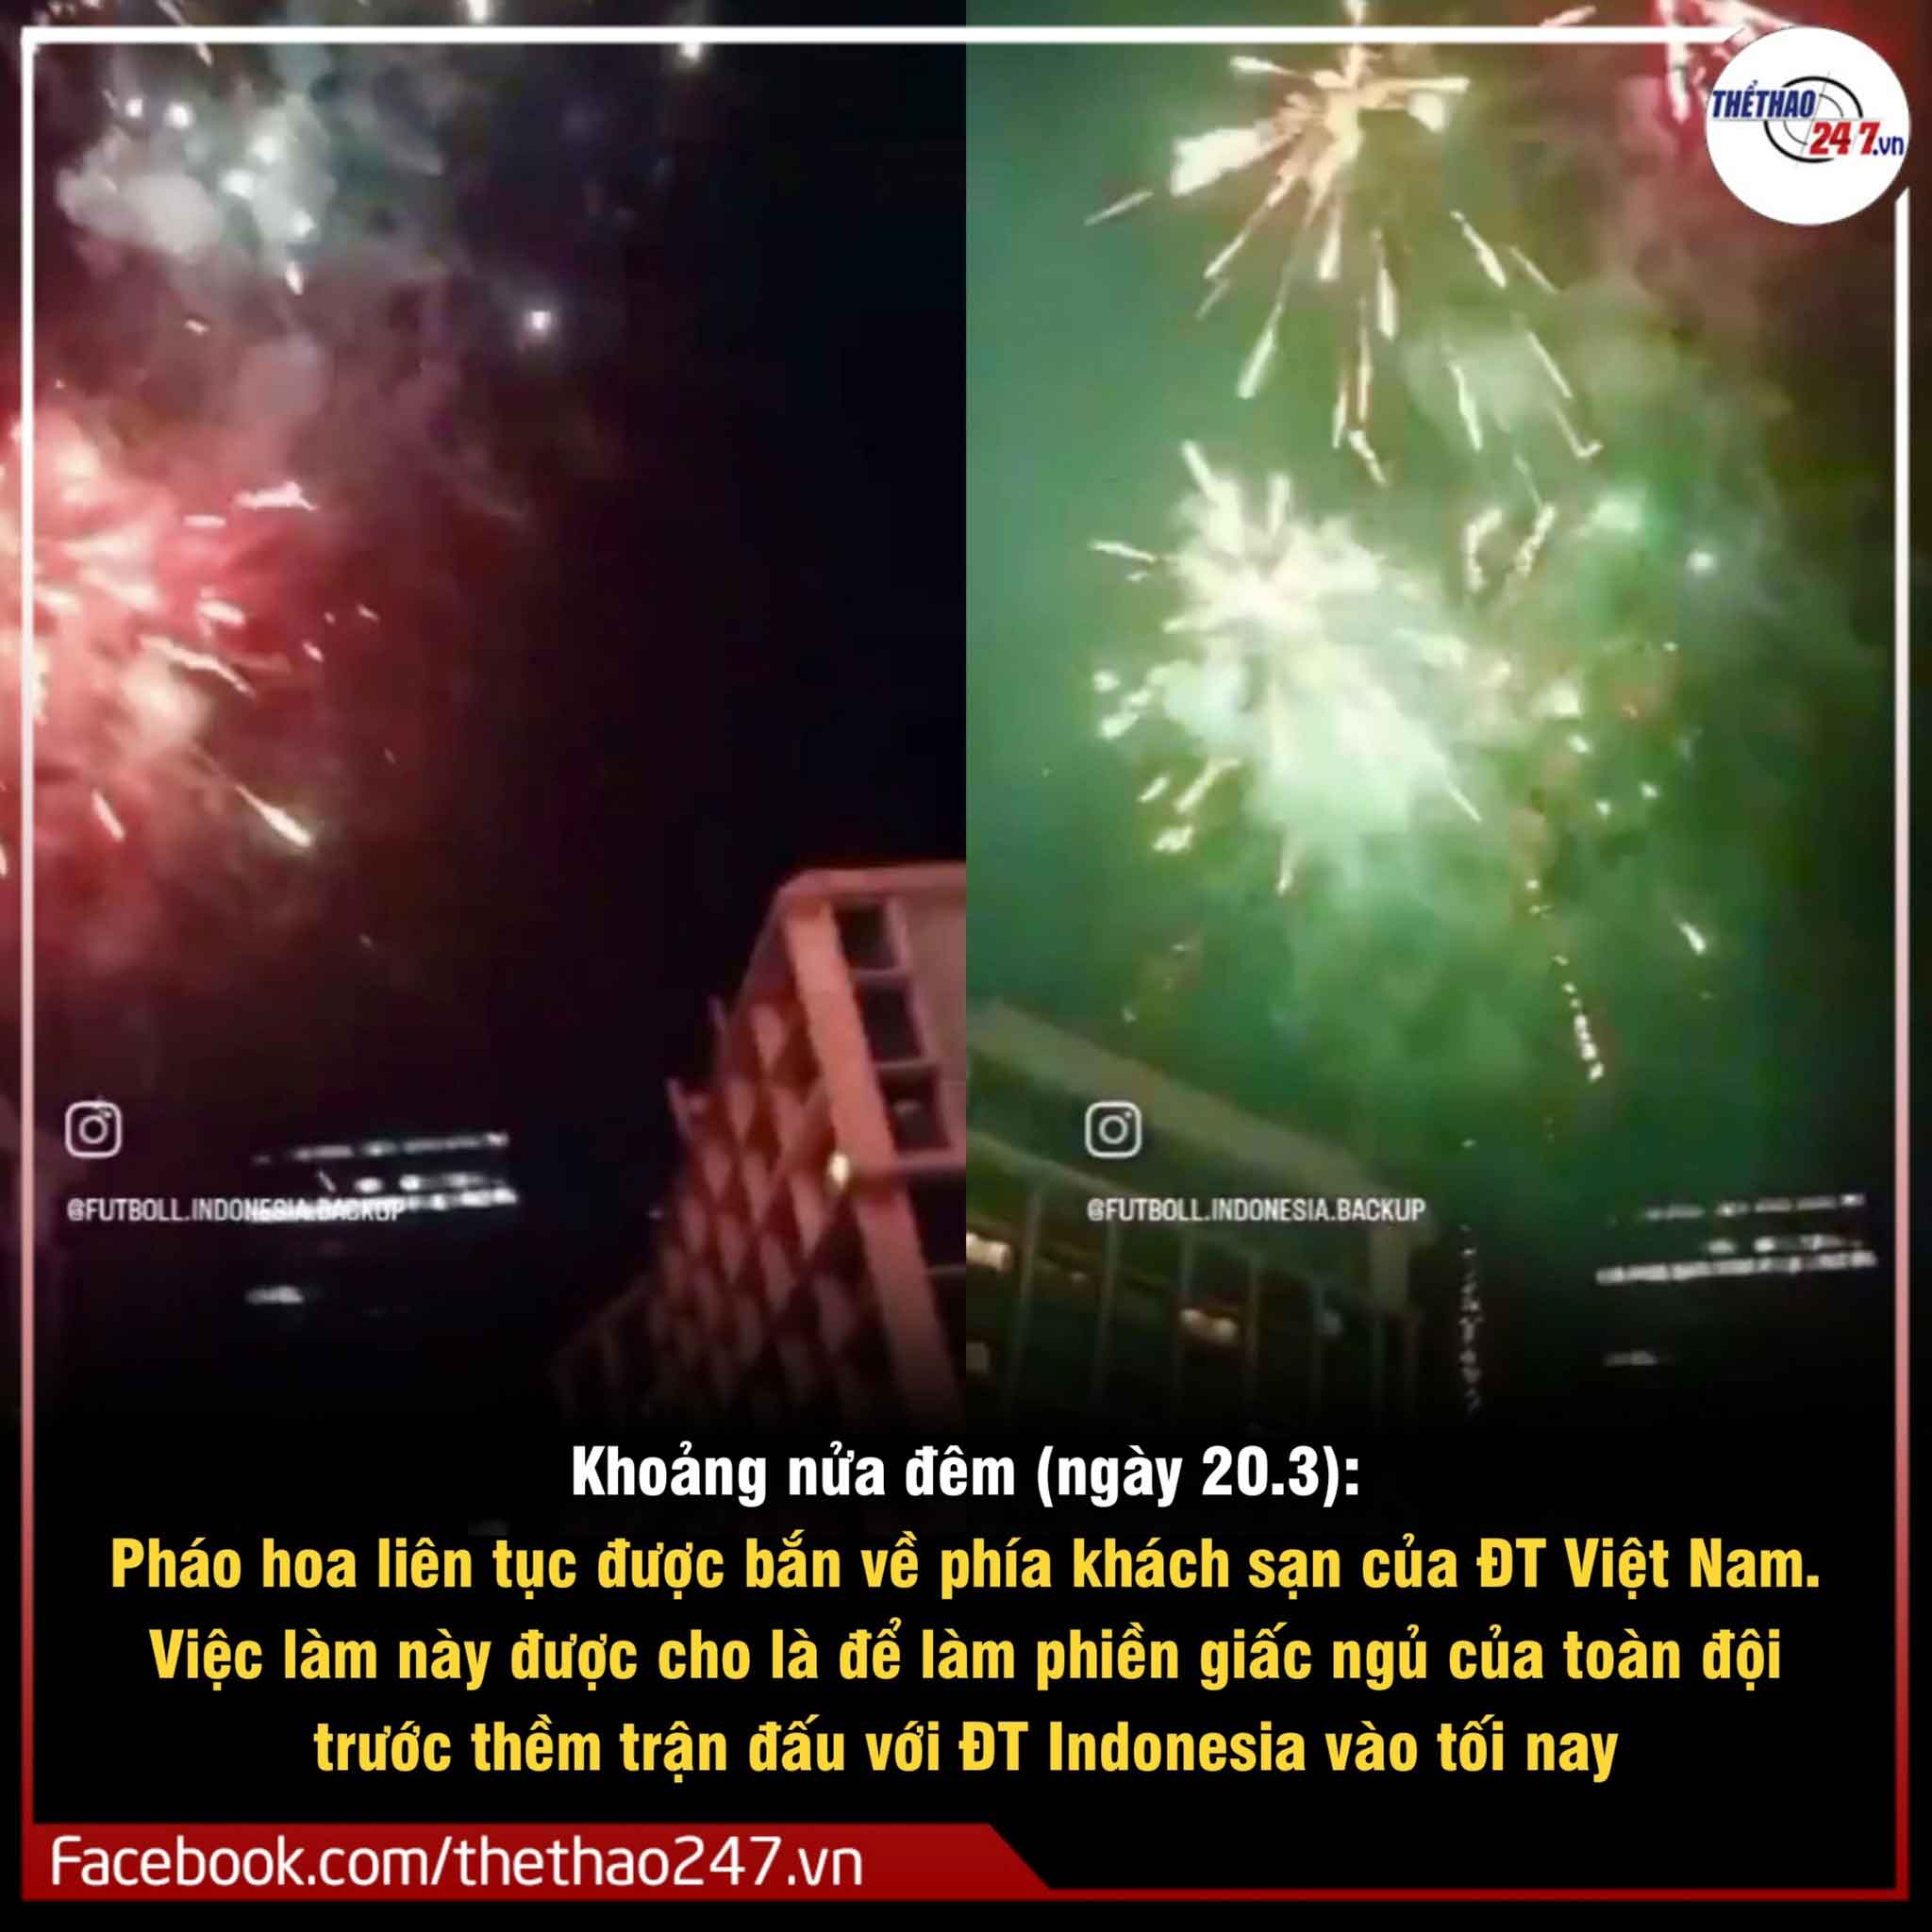 Nóng: CĐV Indonesia bắn trực tiếp pháo hoa vào khách sạn đội tuyệt Việt Nam đang ở!!!